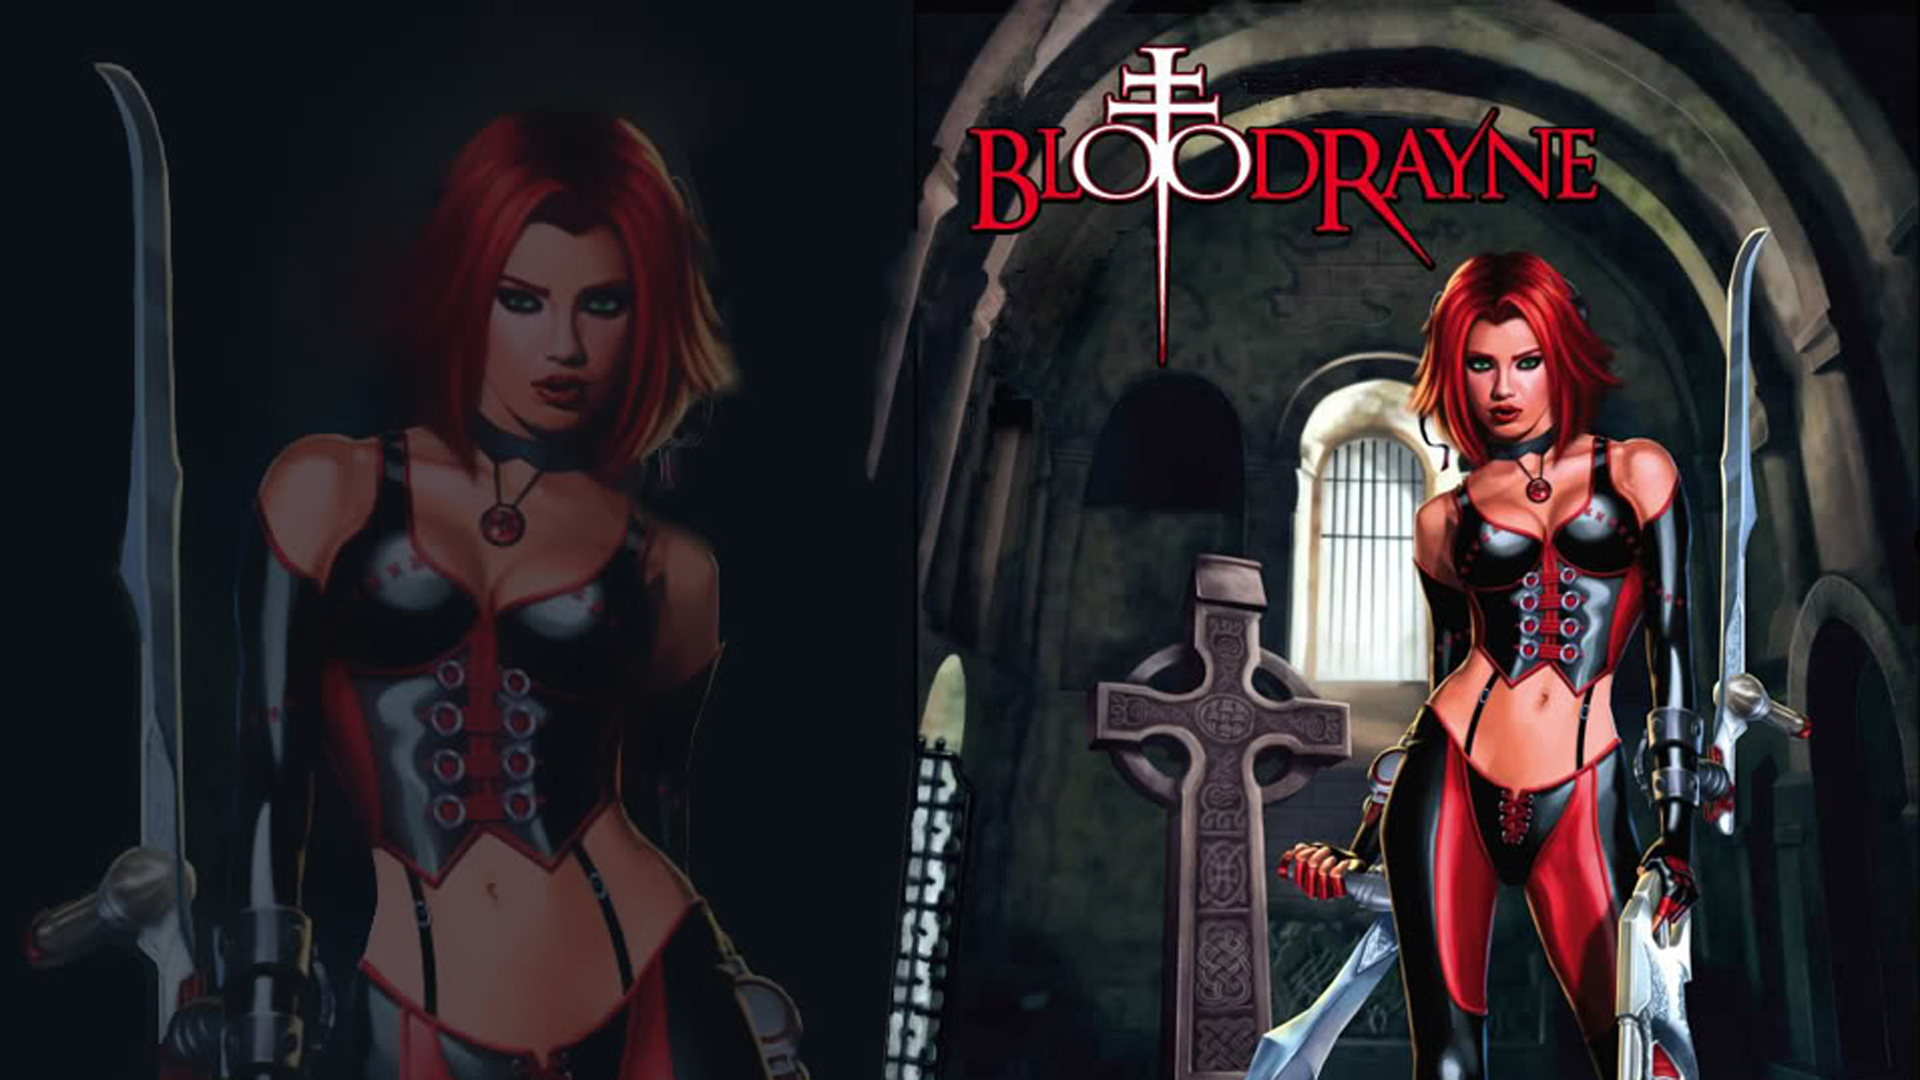 Descarga gratis la imagen Videojuego, Bloodrayne en el escritorio de tu PC